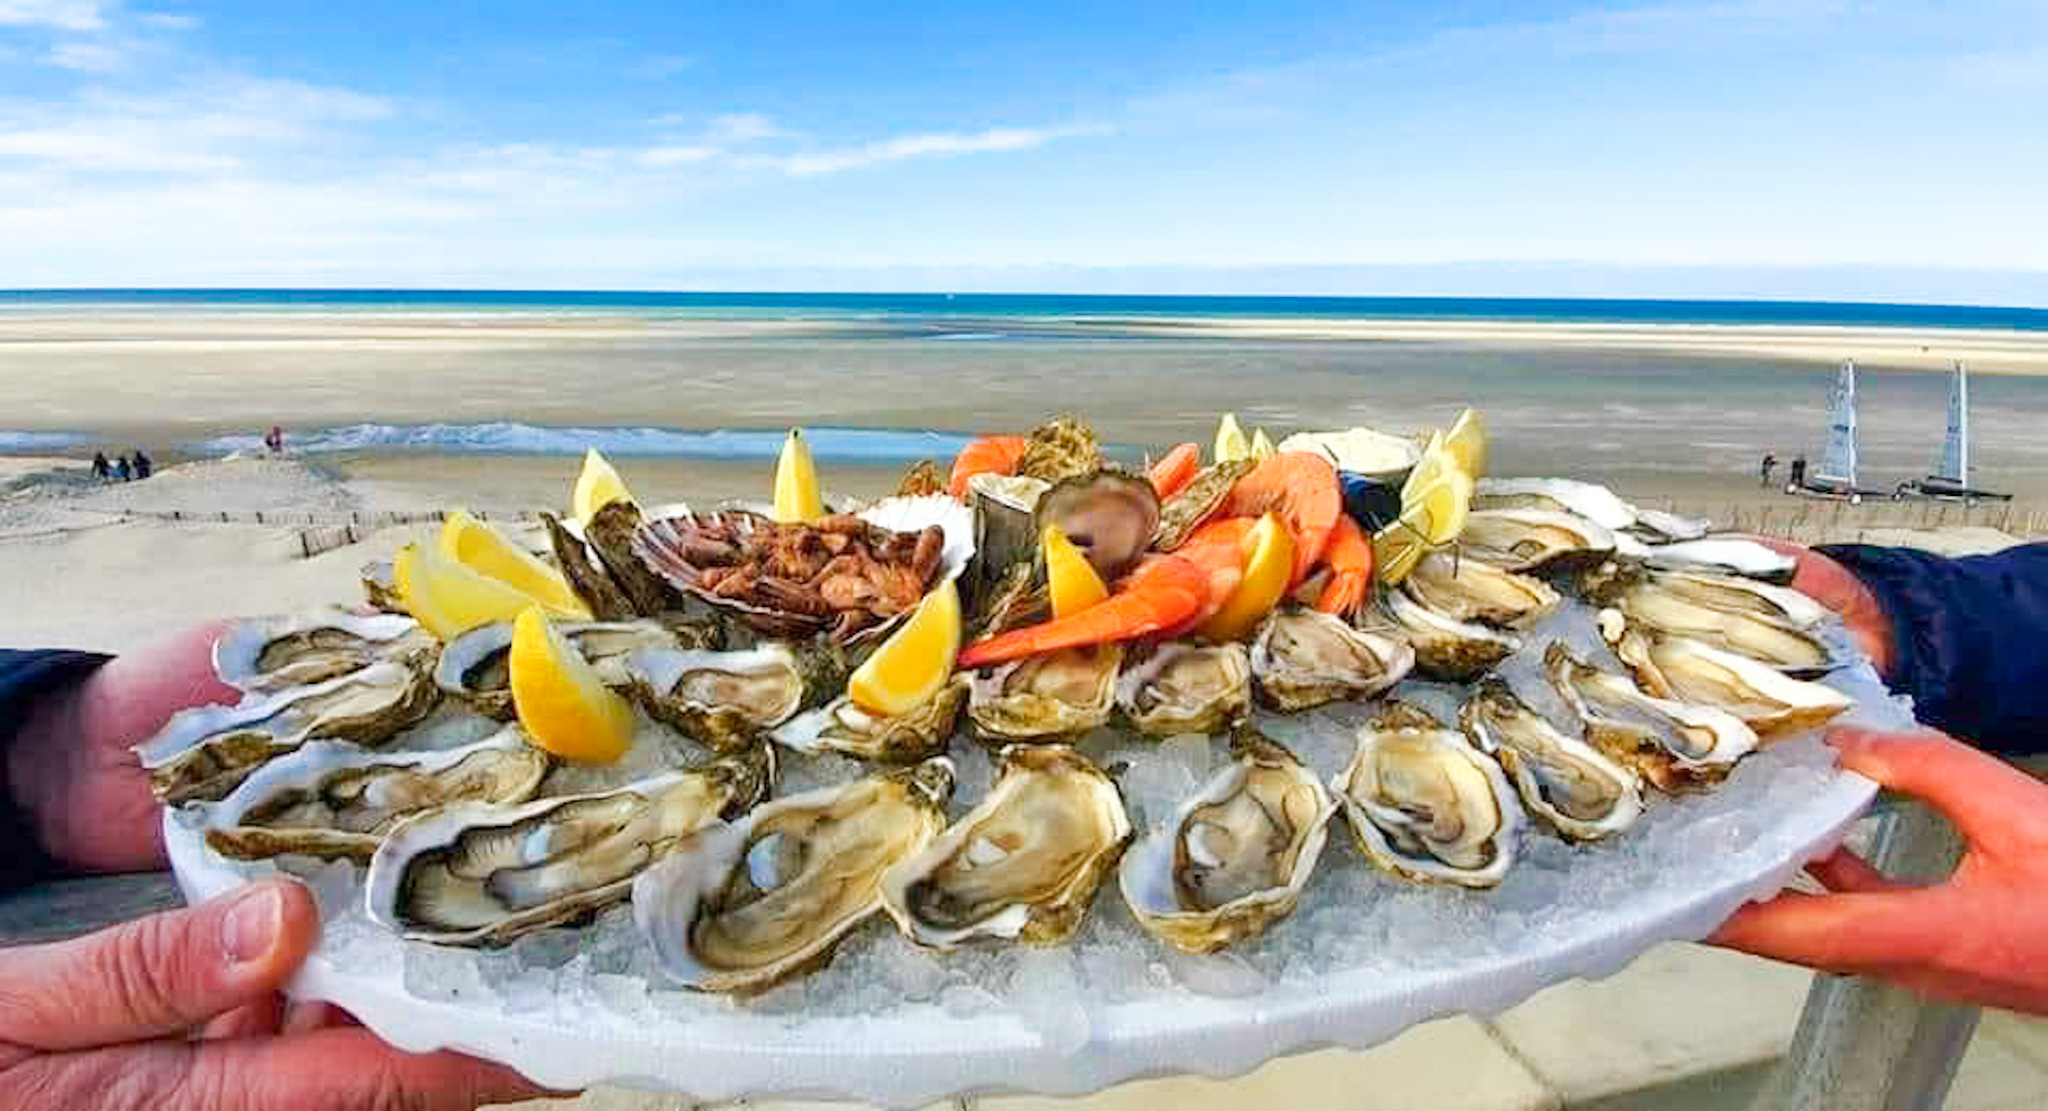 Le Comptoir de la mer cote d'opale camiers restaurant fruits de mer